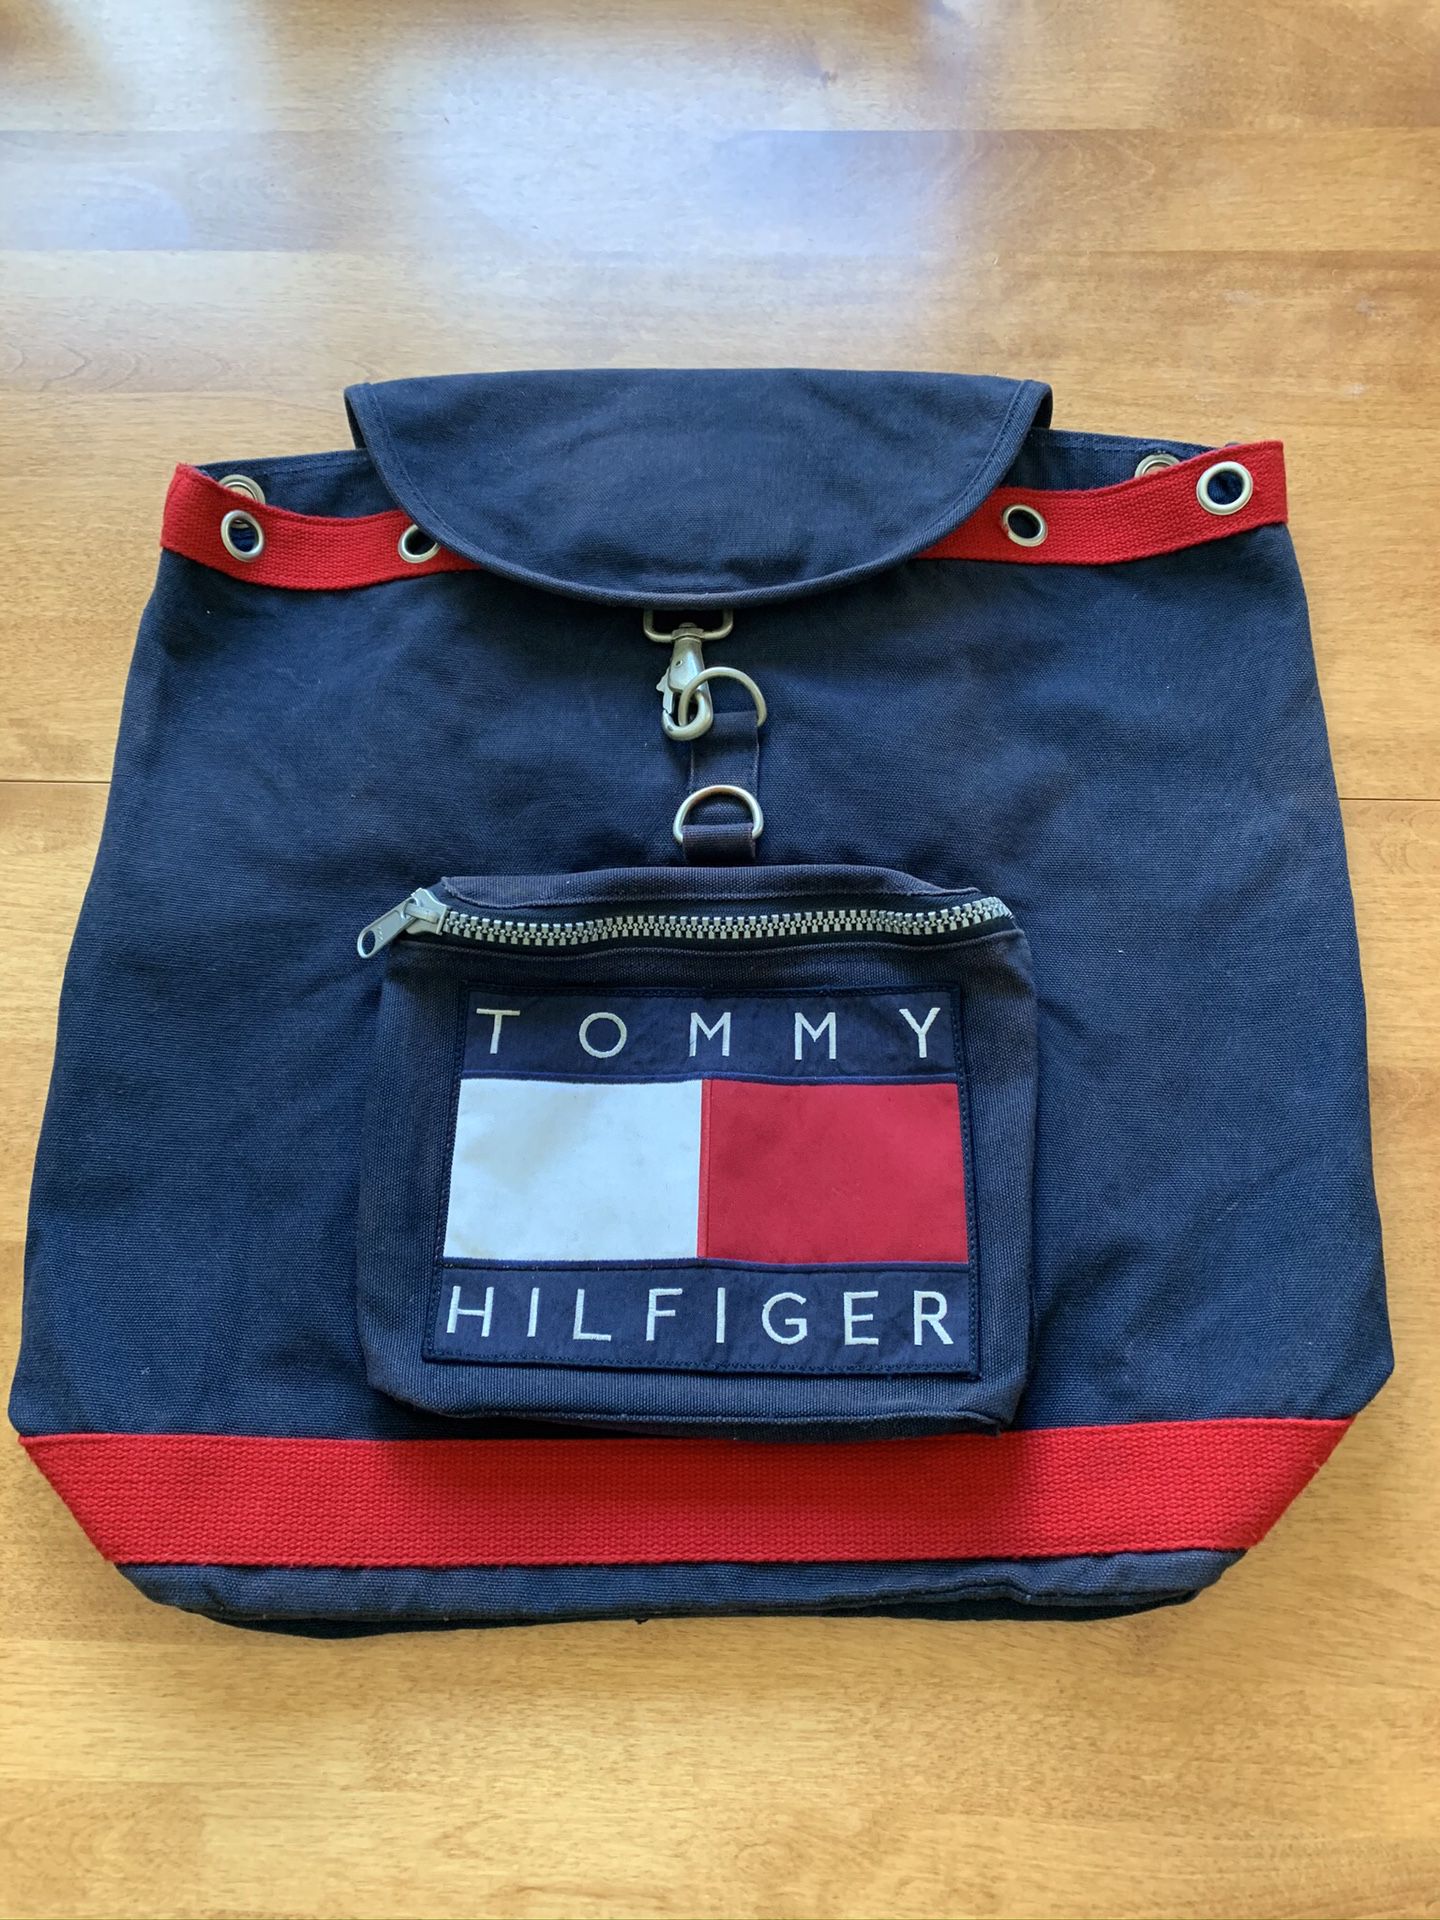 Tommy Hilfiger’s backpack